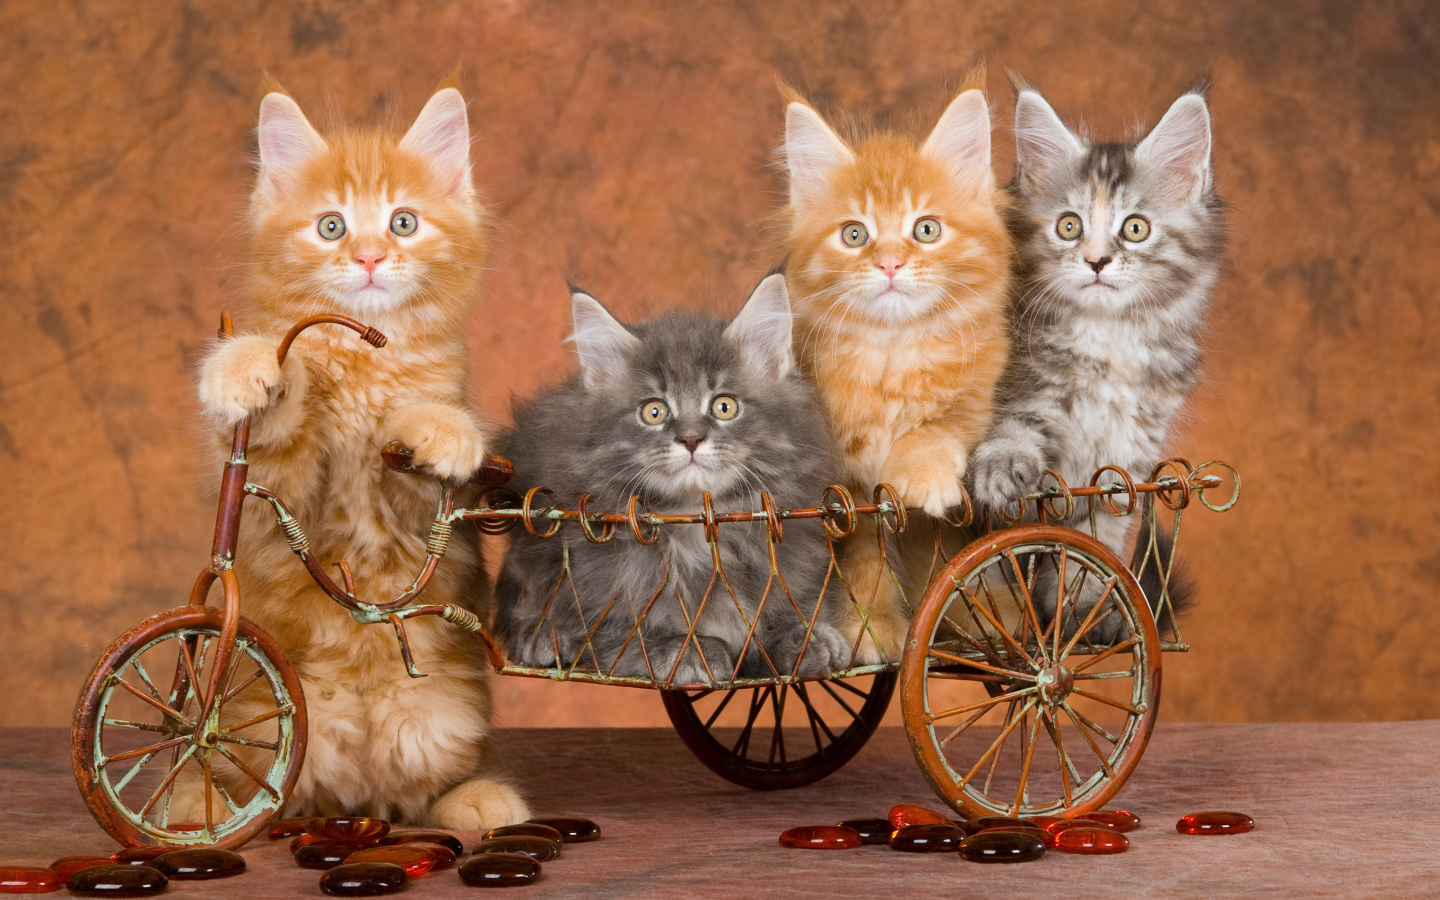 Das Young Kittens Wallpaper 1440x900